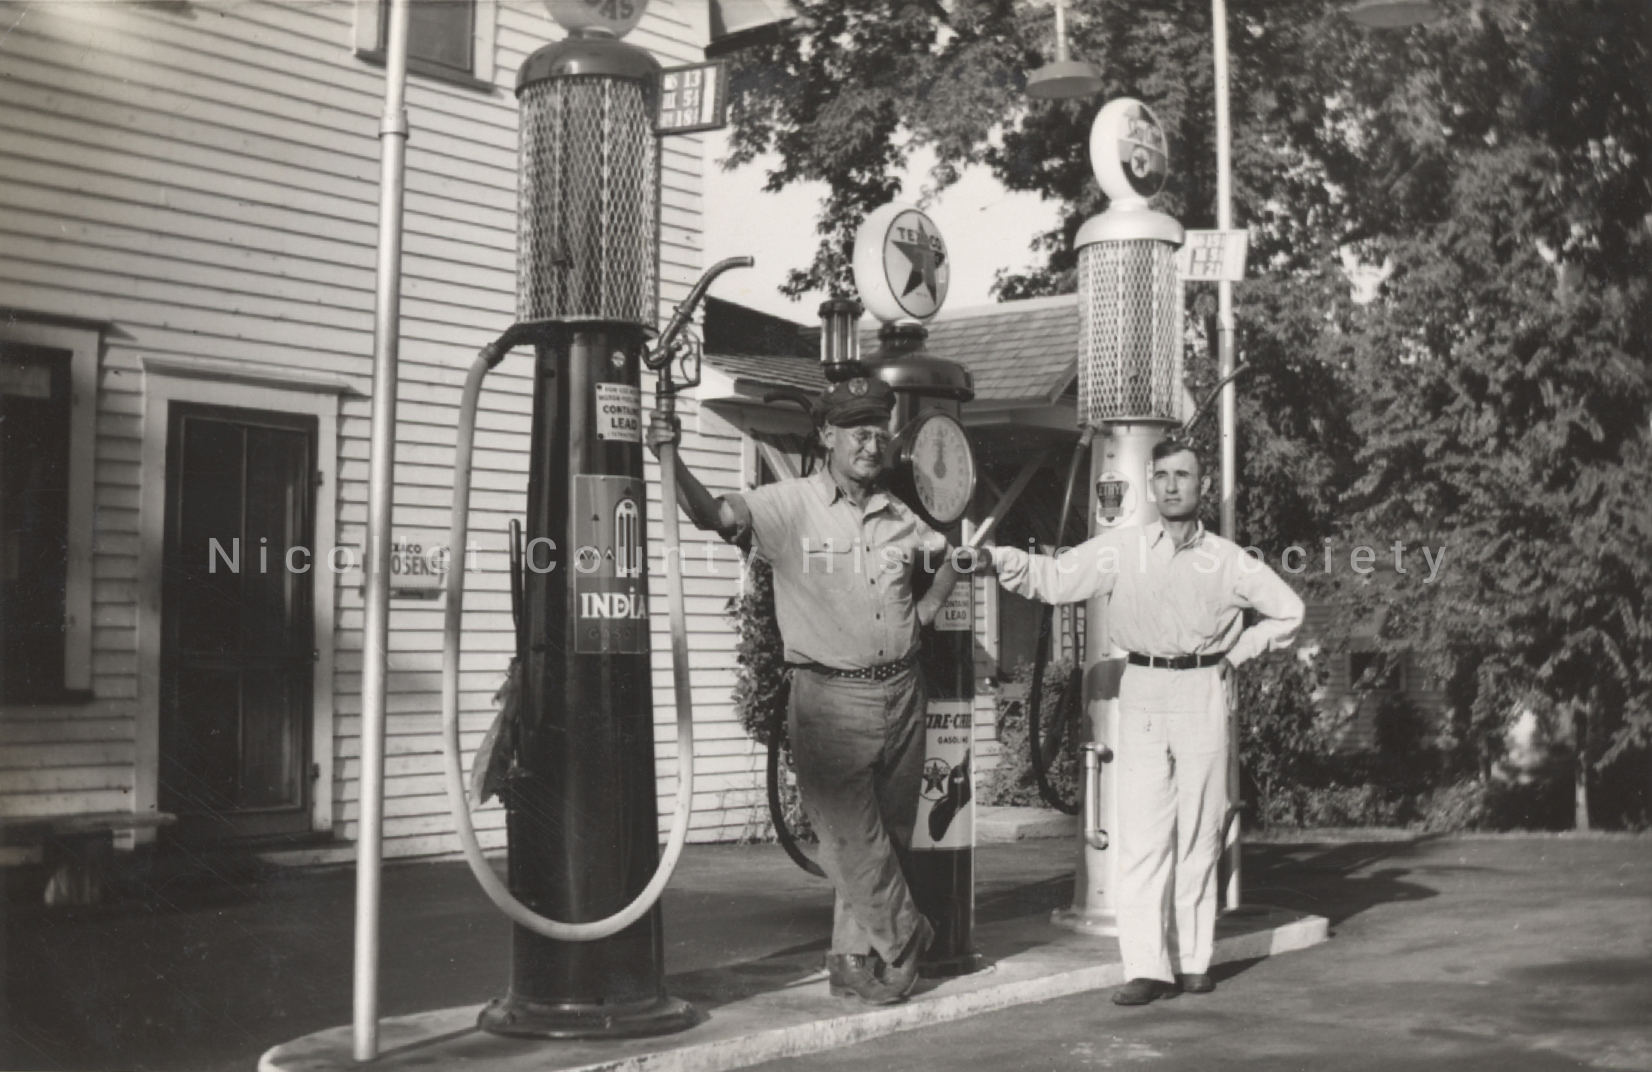 a man standing next to a gas pump